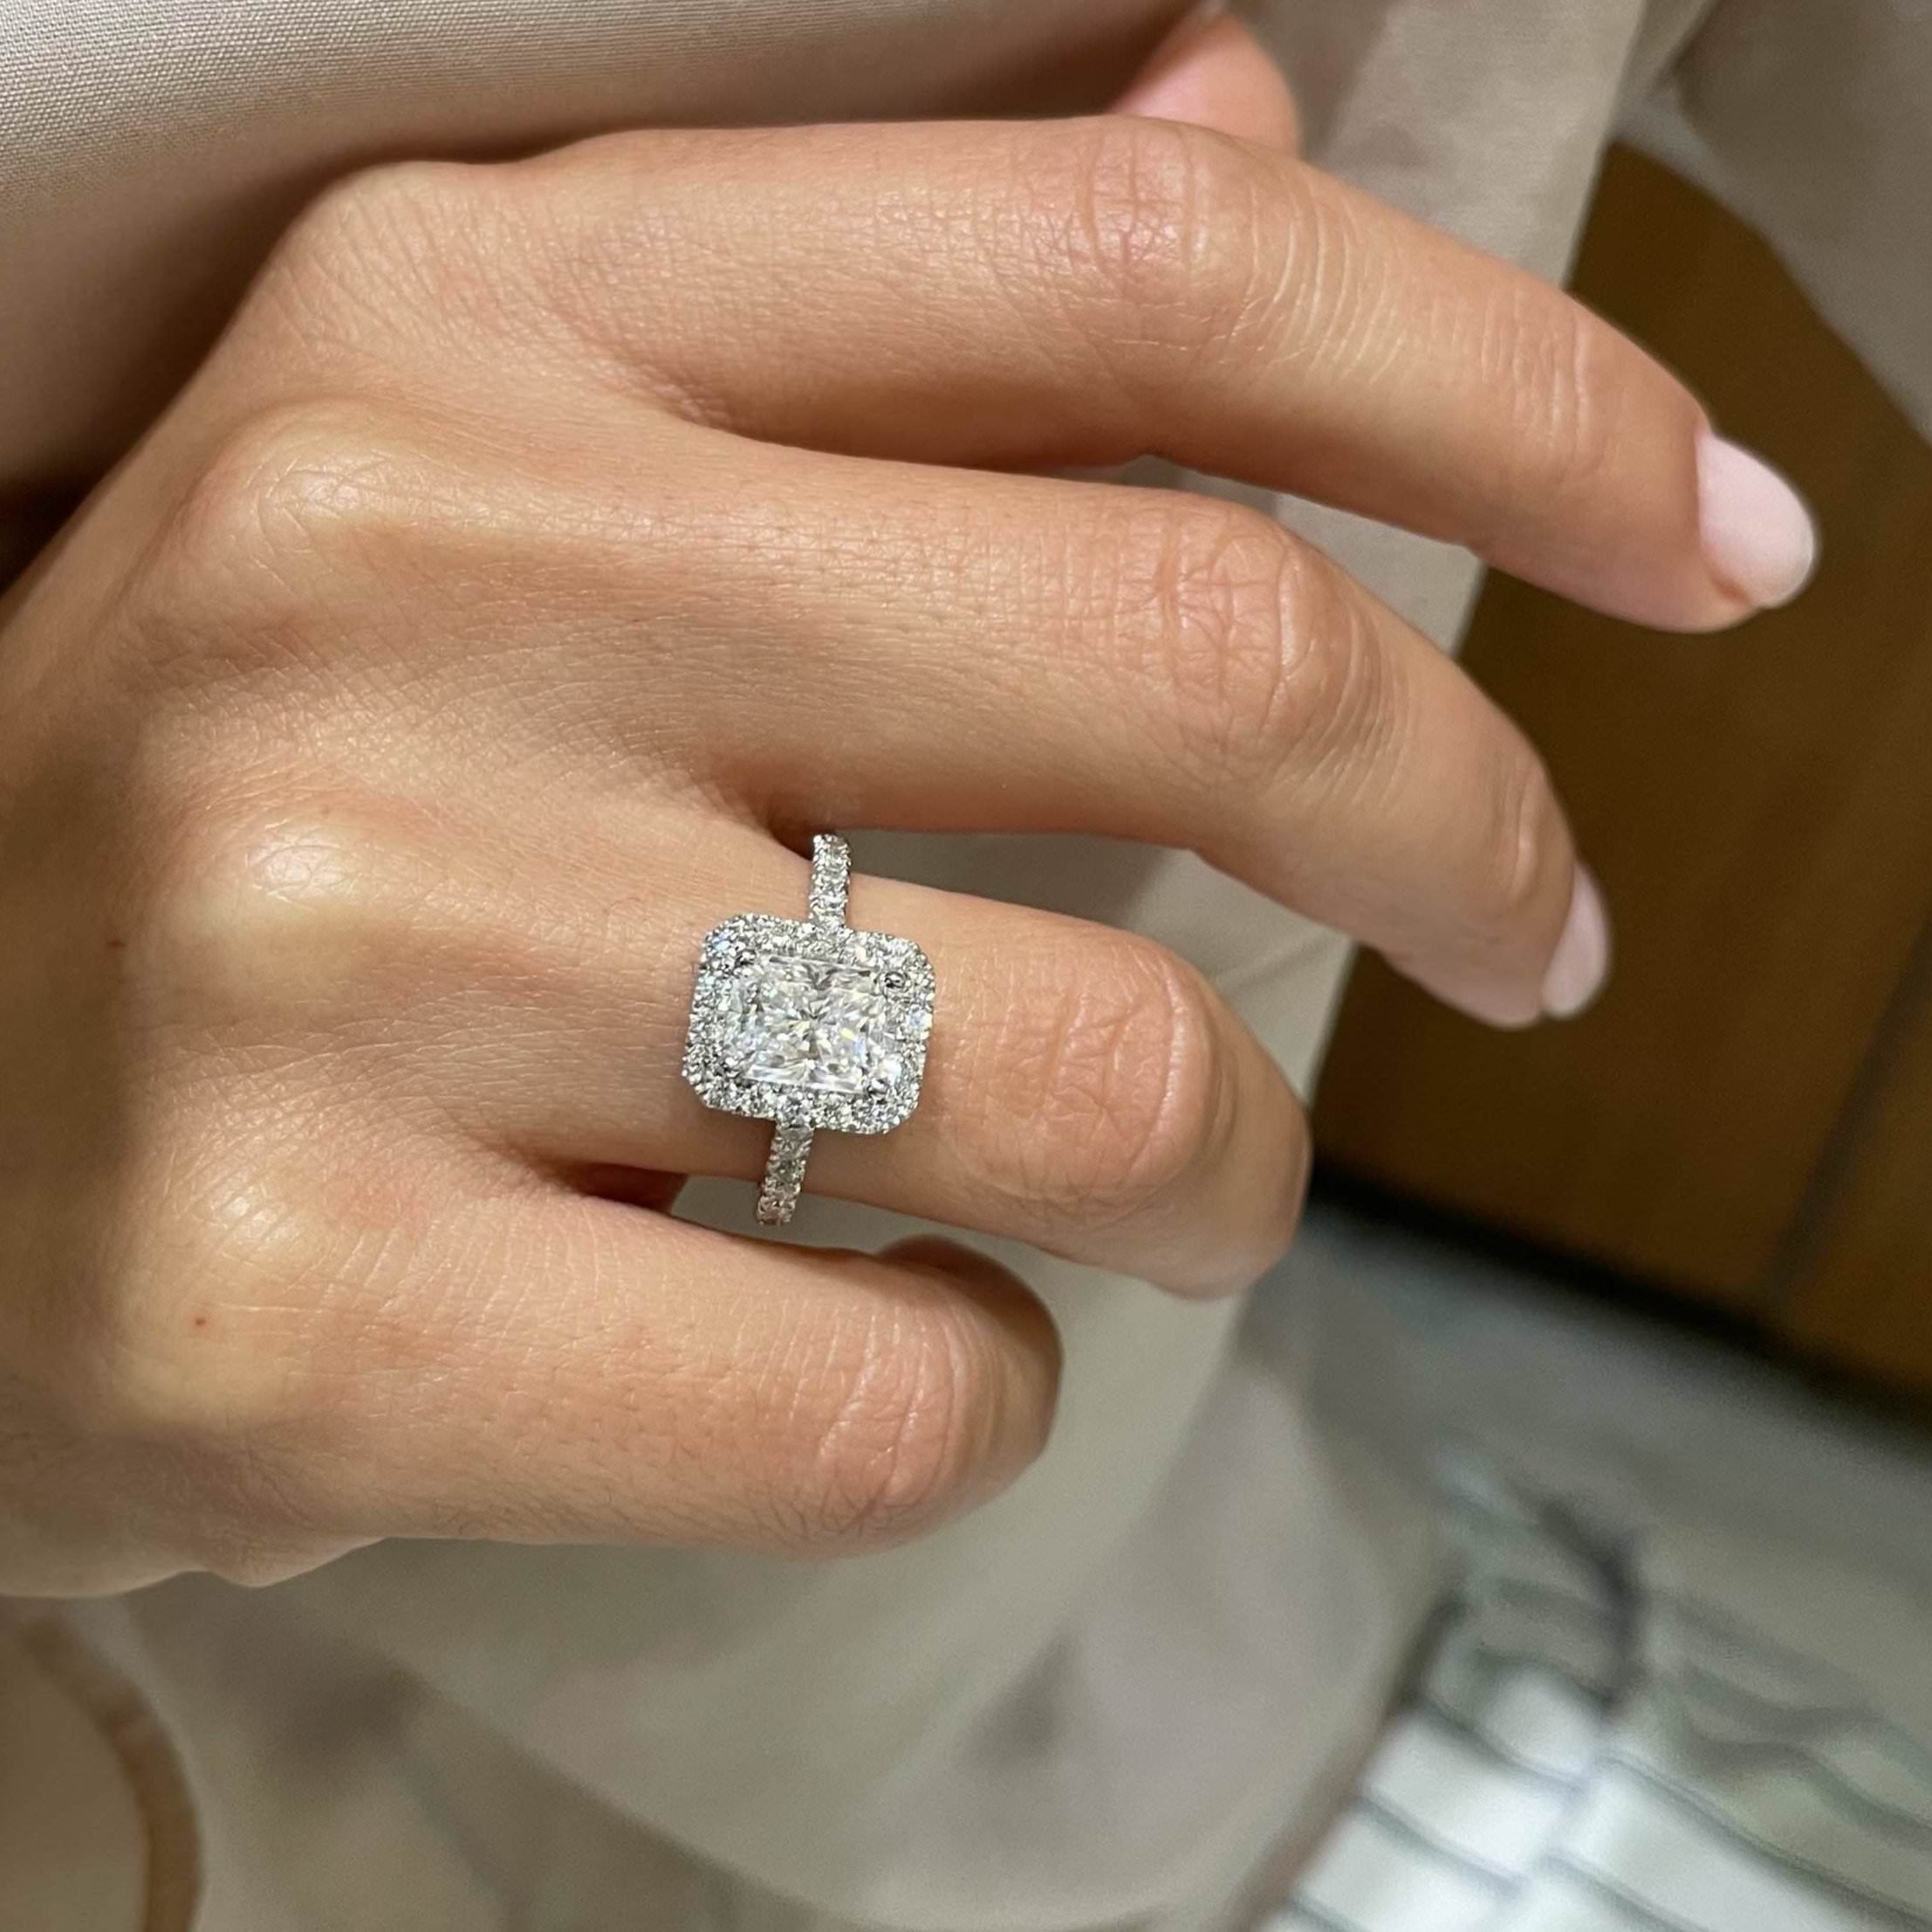 Andrea Moissanite & Diamonds Ring   (2.3 Carat) -18K White Gold